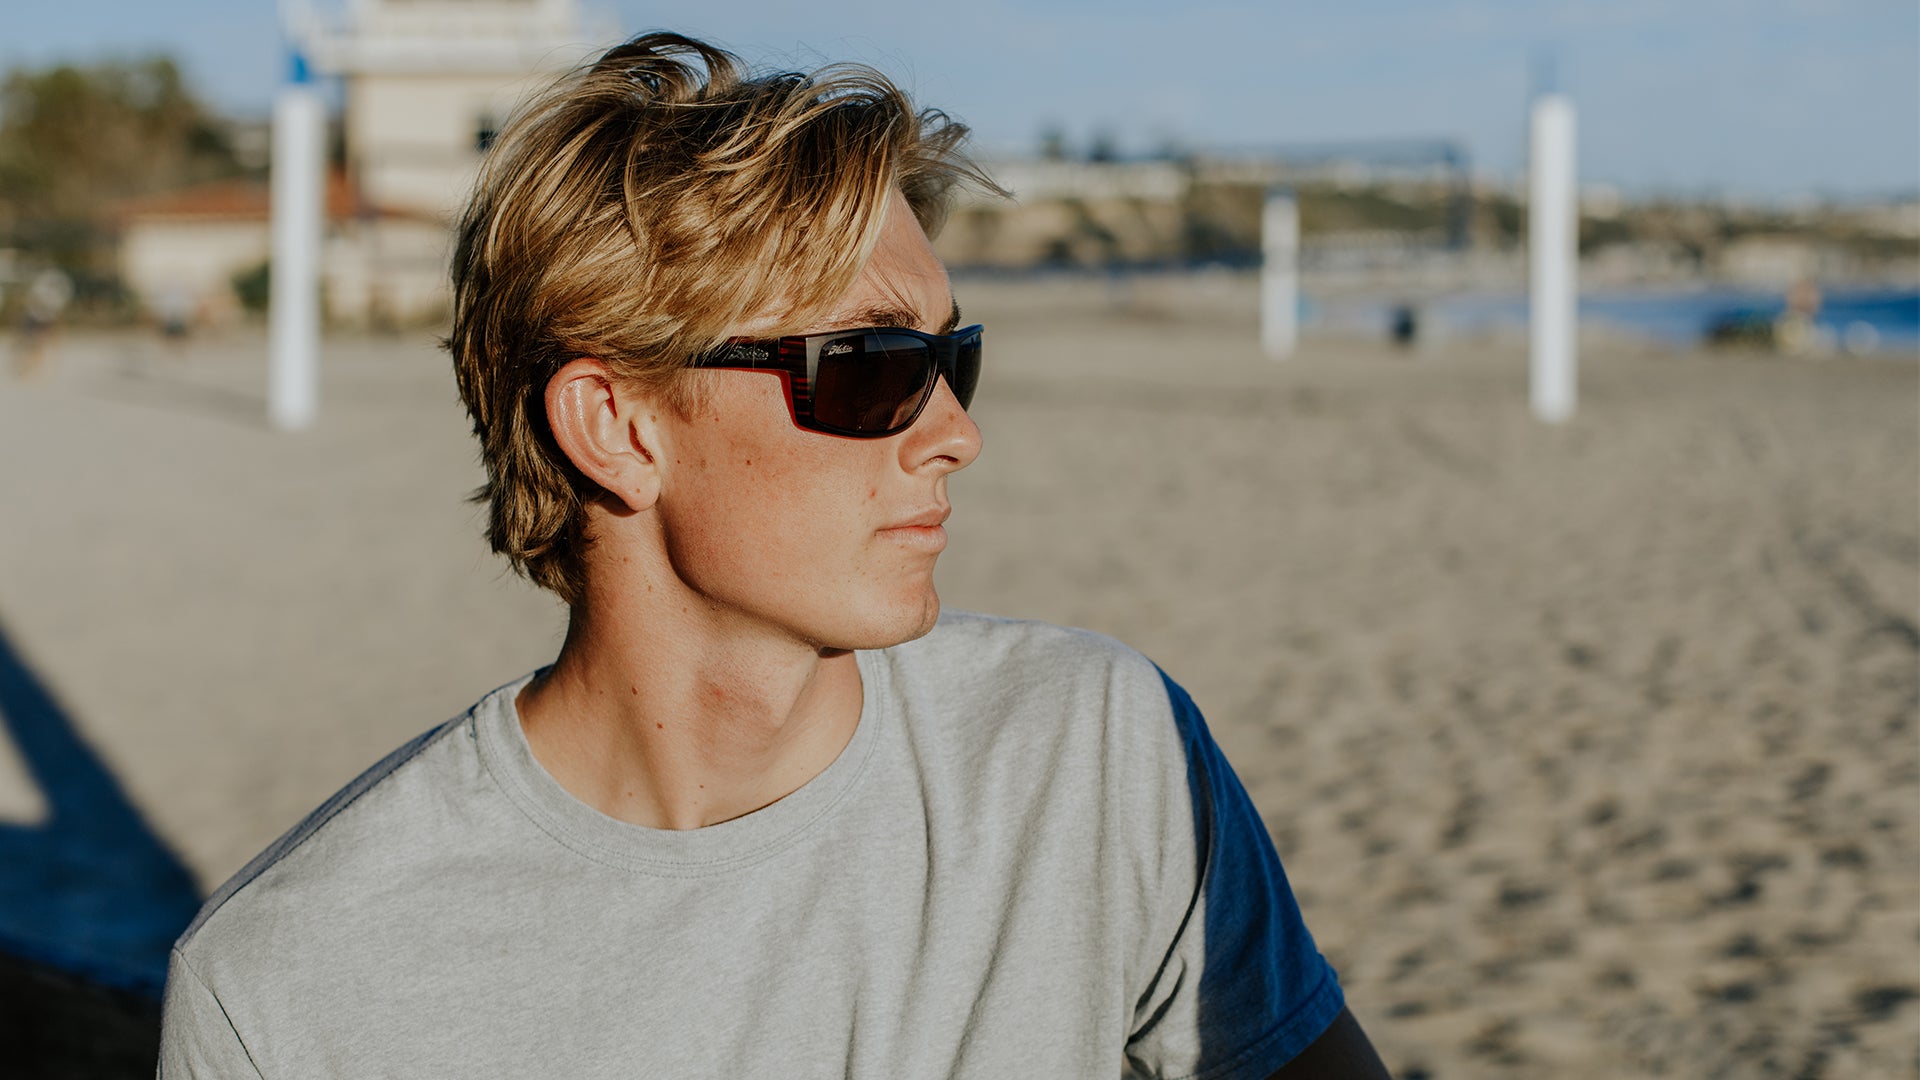 Hobie Eyewear Baja Polarized Sunglasses lifestyle shot